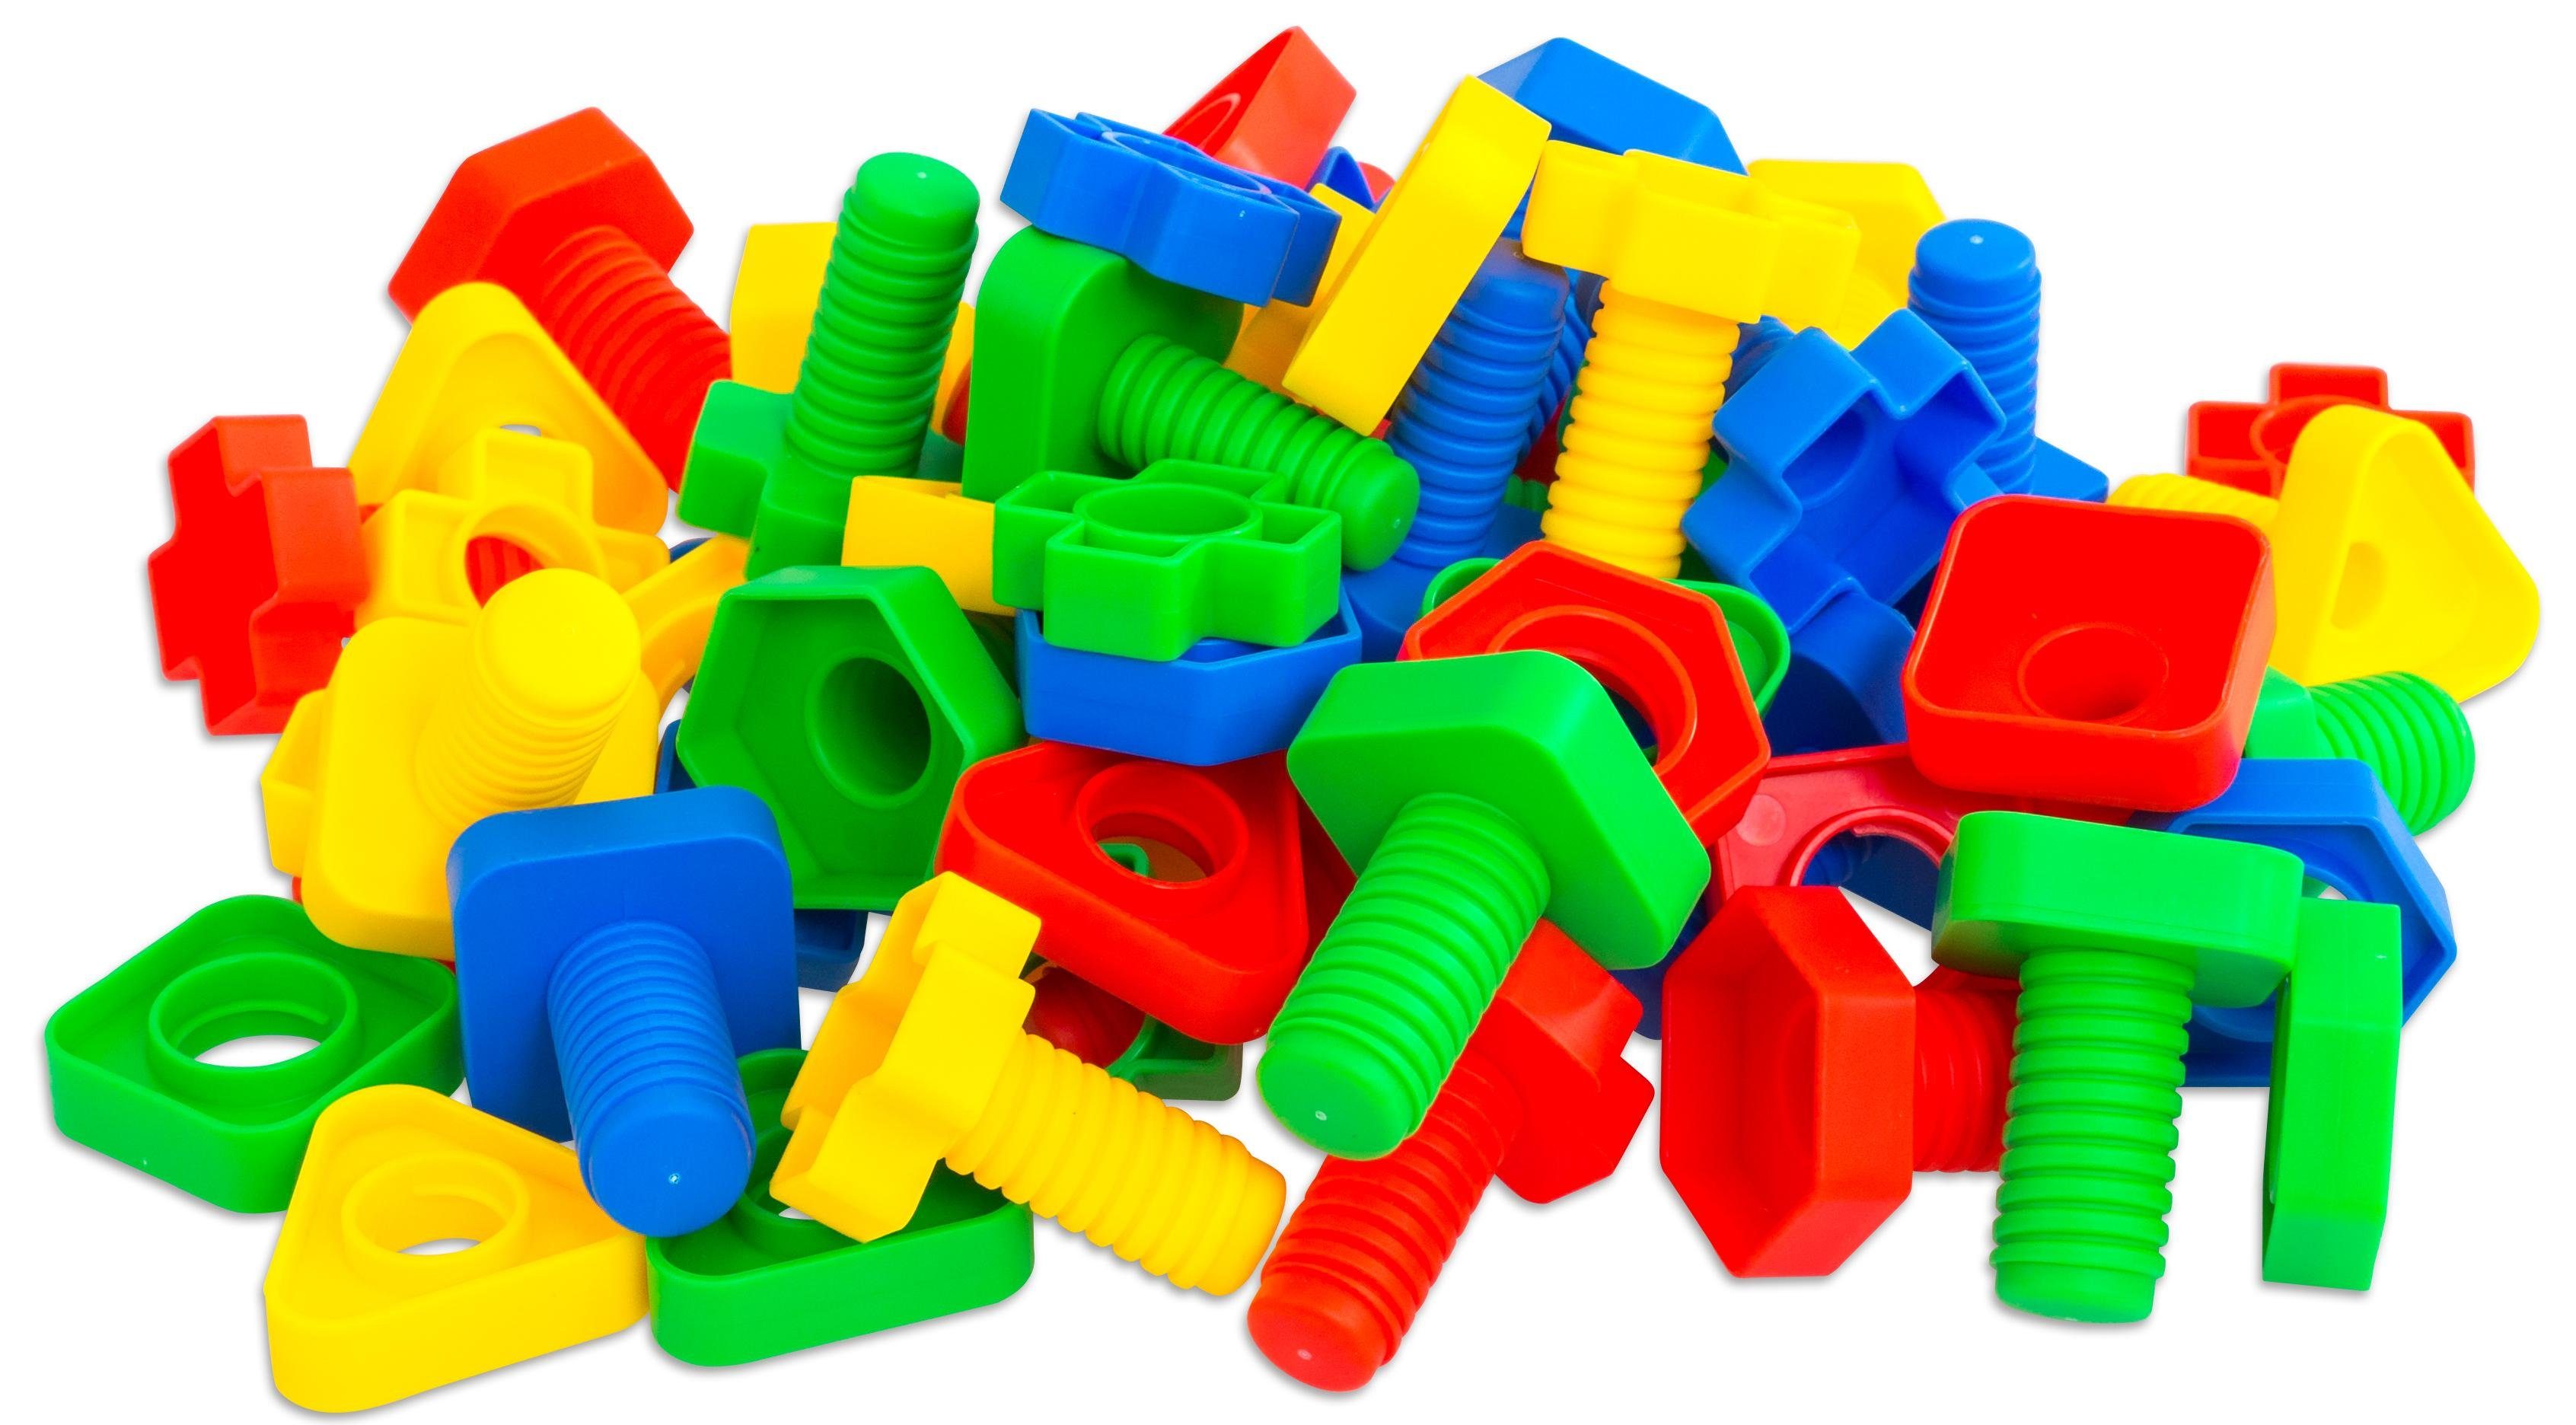 Steck-Spiel Steckspielzeug Buntes (64-tlg) Schrauben-Spiel Kinder-Spielzeug Betzold Werkzeug,